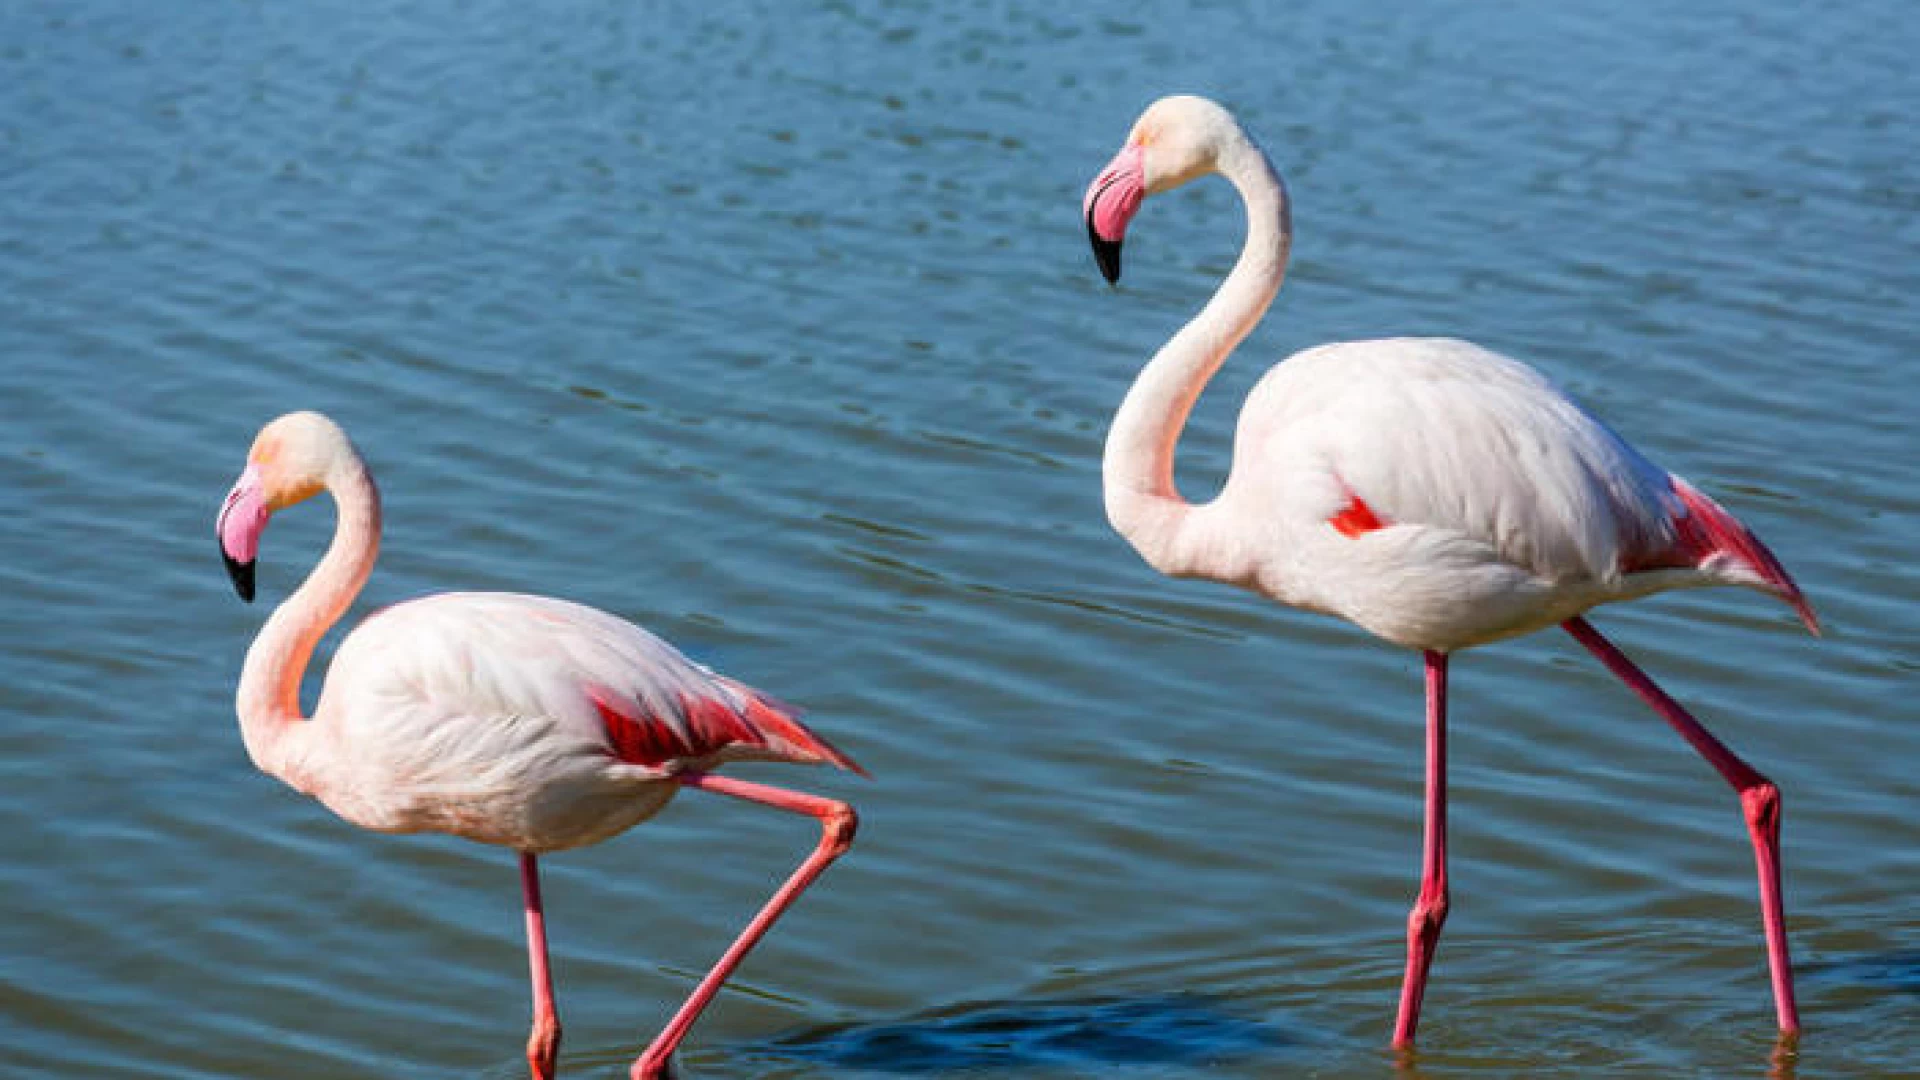 La Riserva naturale del lago di Campotosto accoglie una colonia di fenicotteri rosa. La nota dei Carabinieri Biodiversità dell’Aquila.